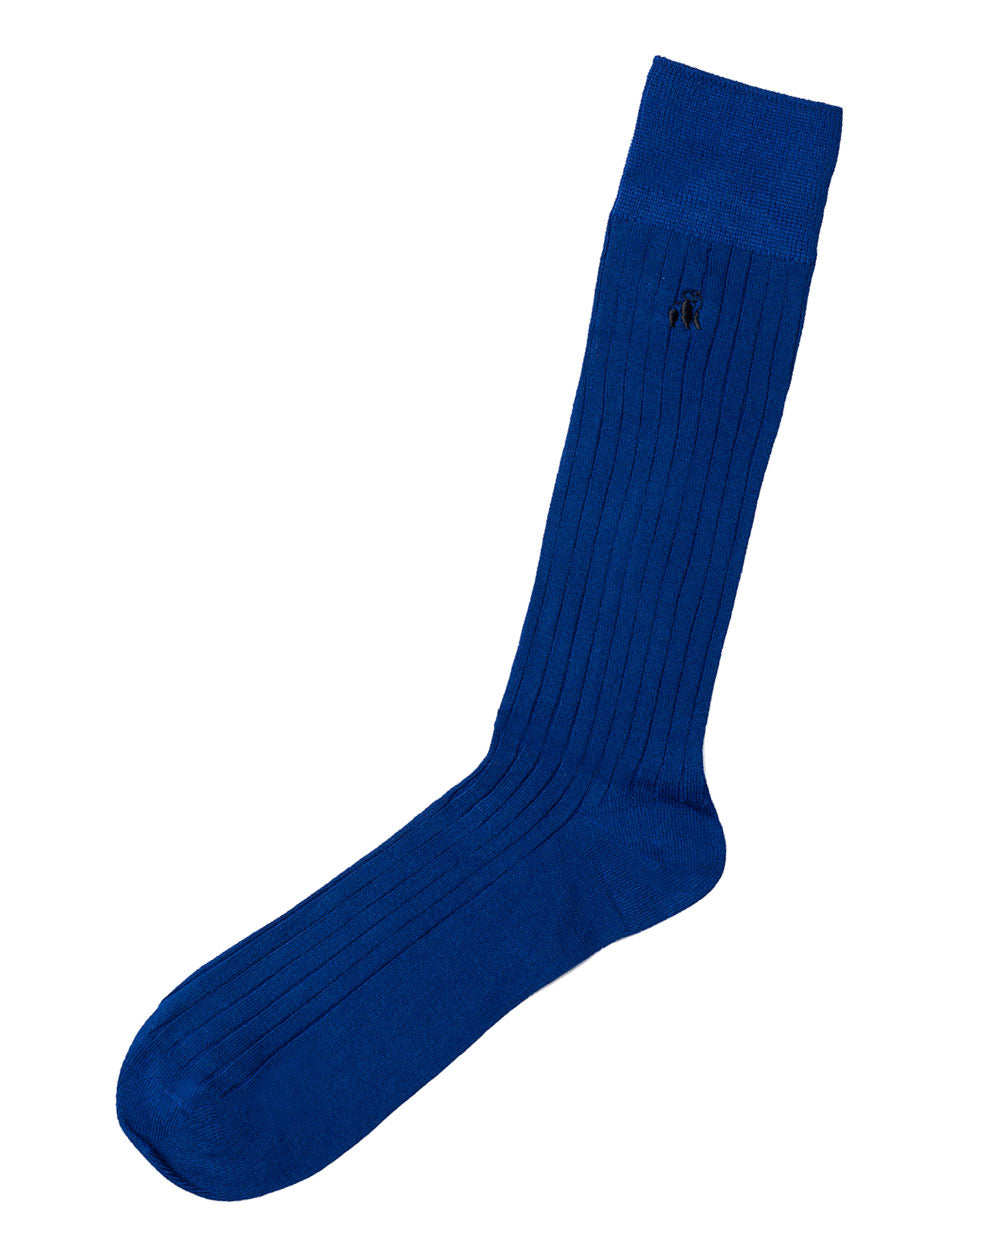 Swole Panda Bamboo Socks 1 Pair (royal blue)